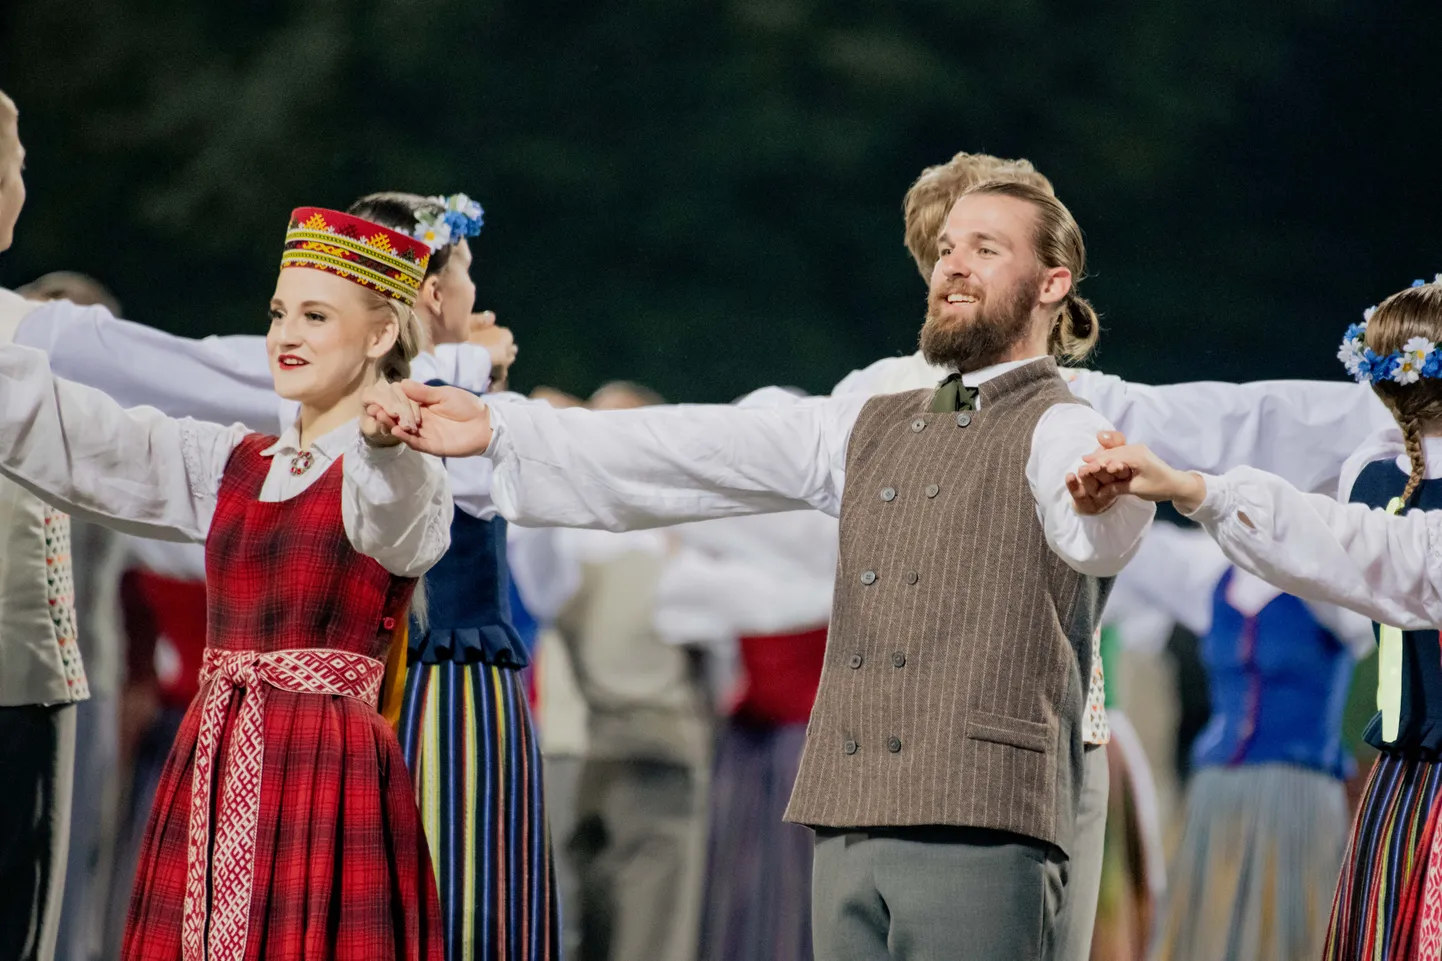 Latvijas novadu krāsas koši iemirdzas deju lieluzvedumā "Mūžīgais dzinējs"